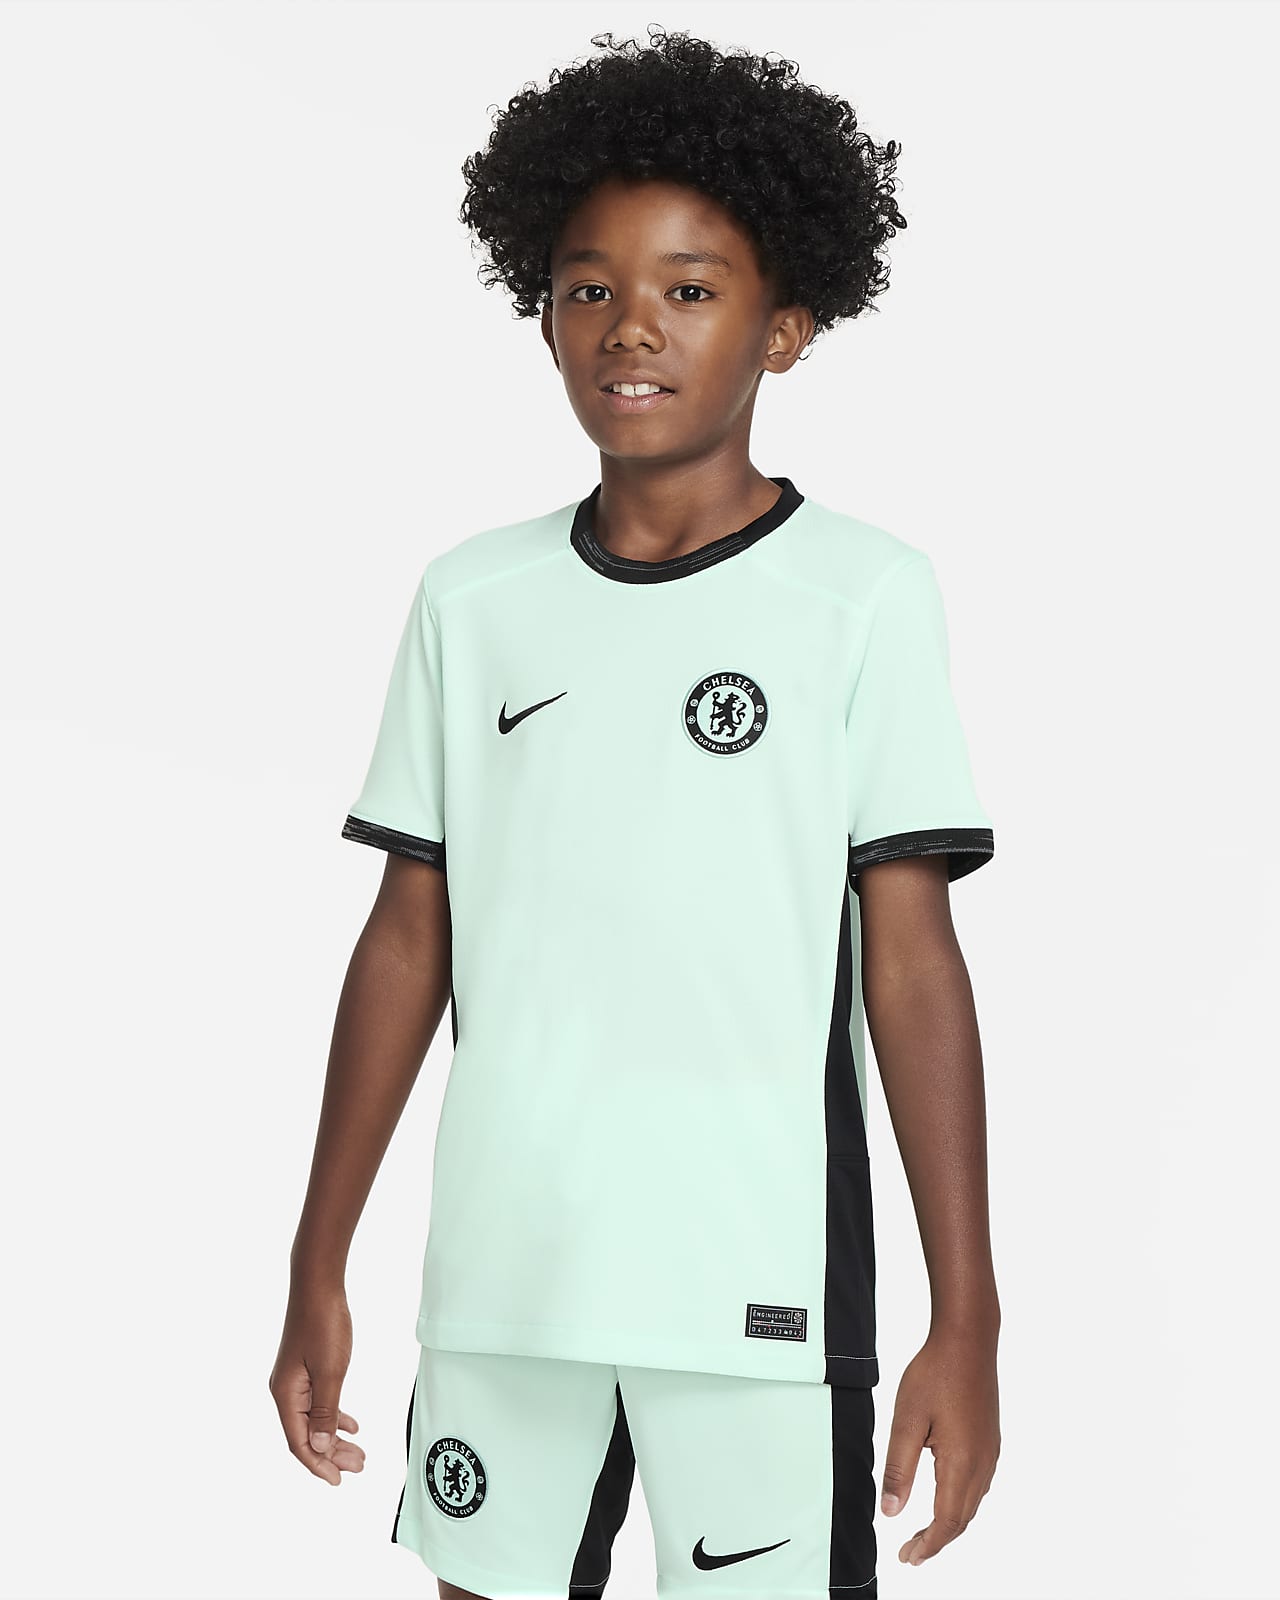 Ποδοσφαιρική φανέλα Nike Dri-FIT εναλλακτικής εμφάνισης Τσέλσι 2023/24 Stadium για μεγάλα παιδιά